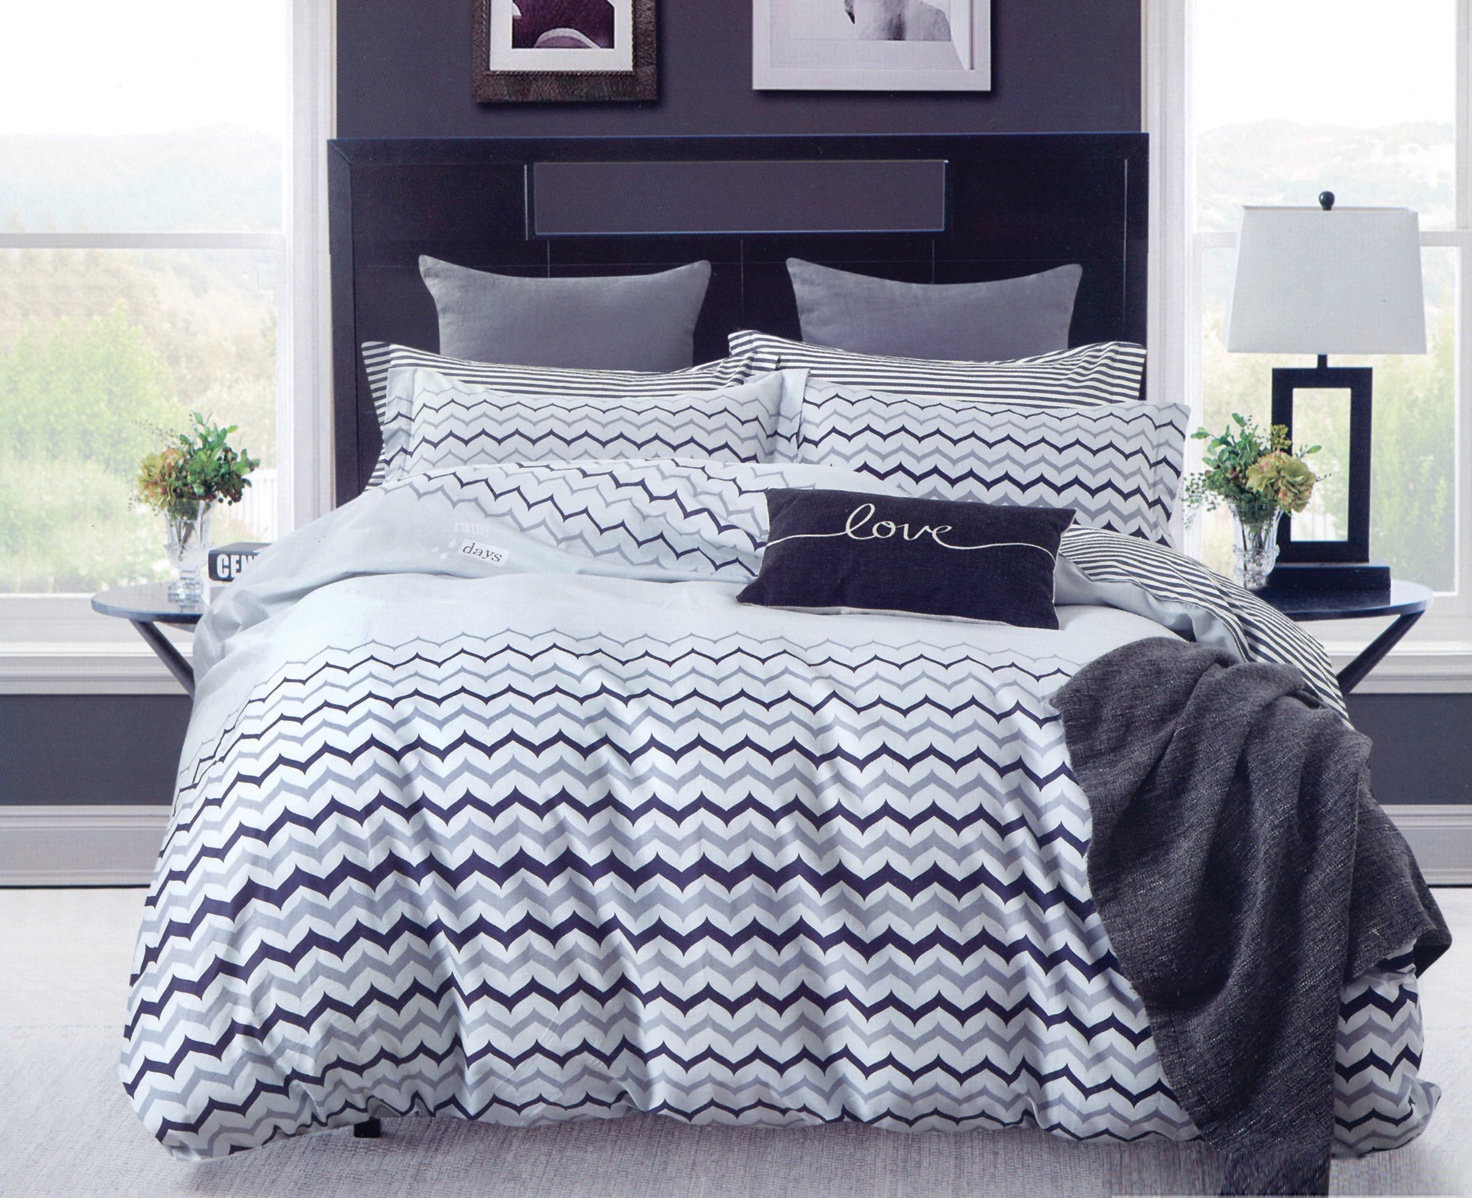 Комплект постельного белья Дом Текстиля SULYAN Лайт, черный, голубой, серый, светло-серый, белый